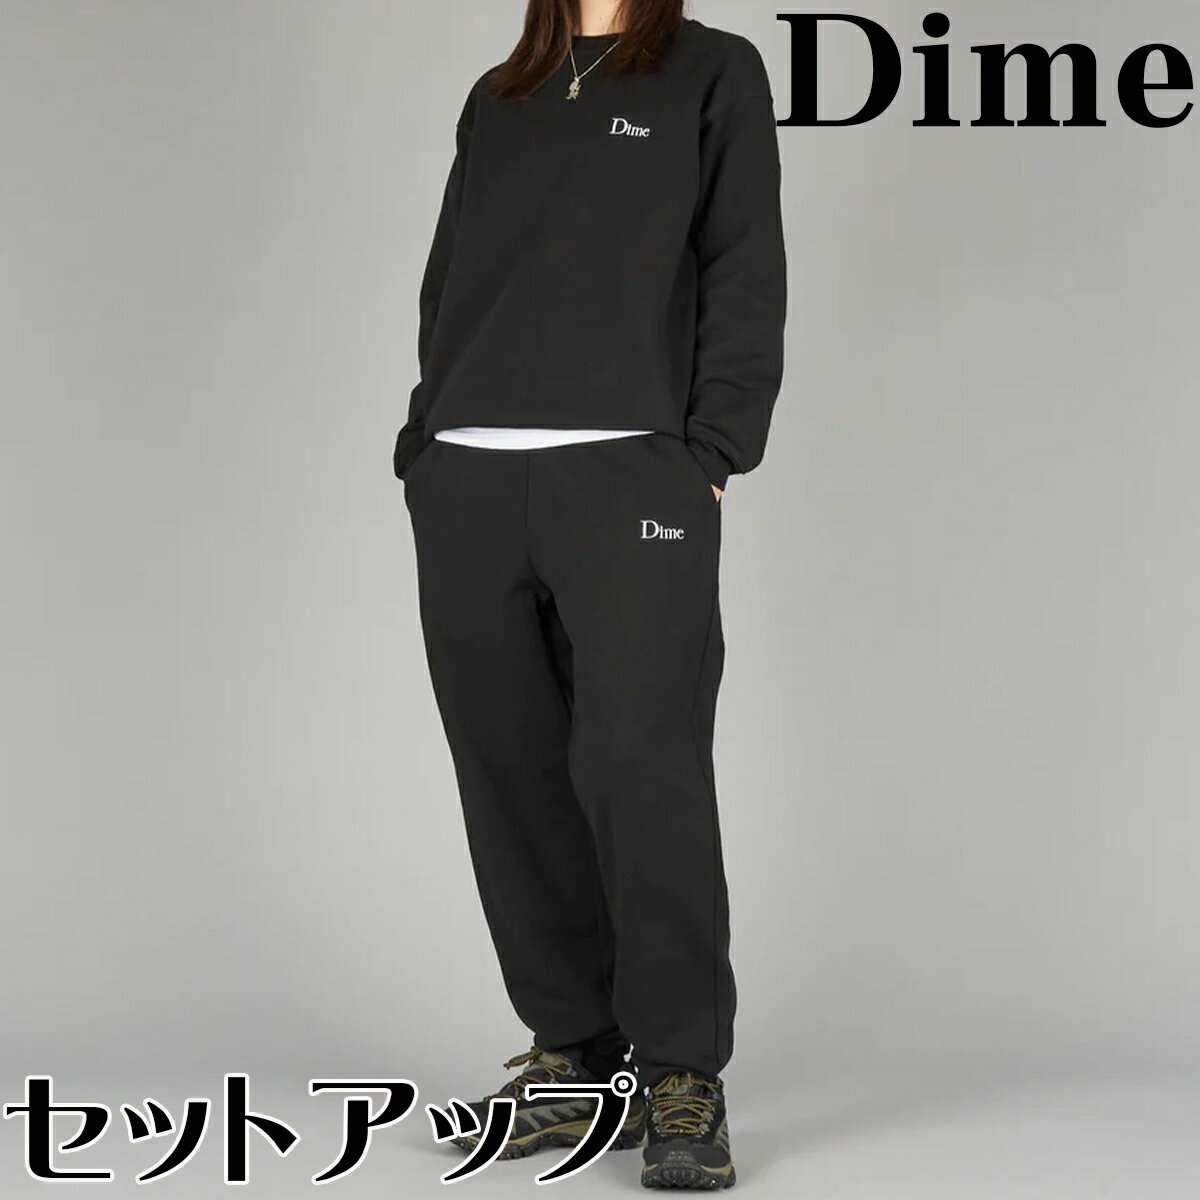 Dime セットアップ トレーナー ダイム スウェット パンツ CLASSIC SMALL LOGO プルオーバー トップス メンズ 正規品[衣類]ユ00572